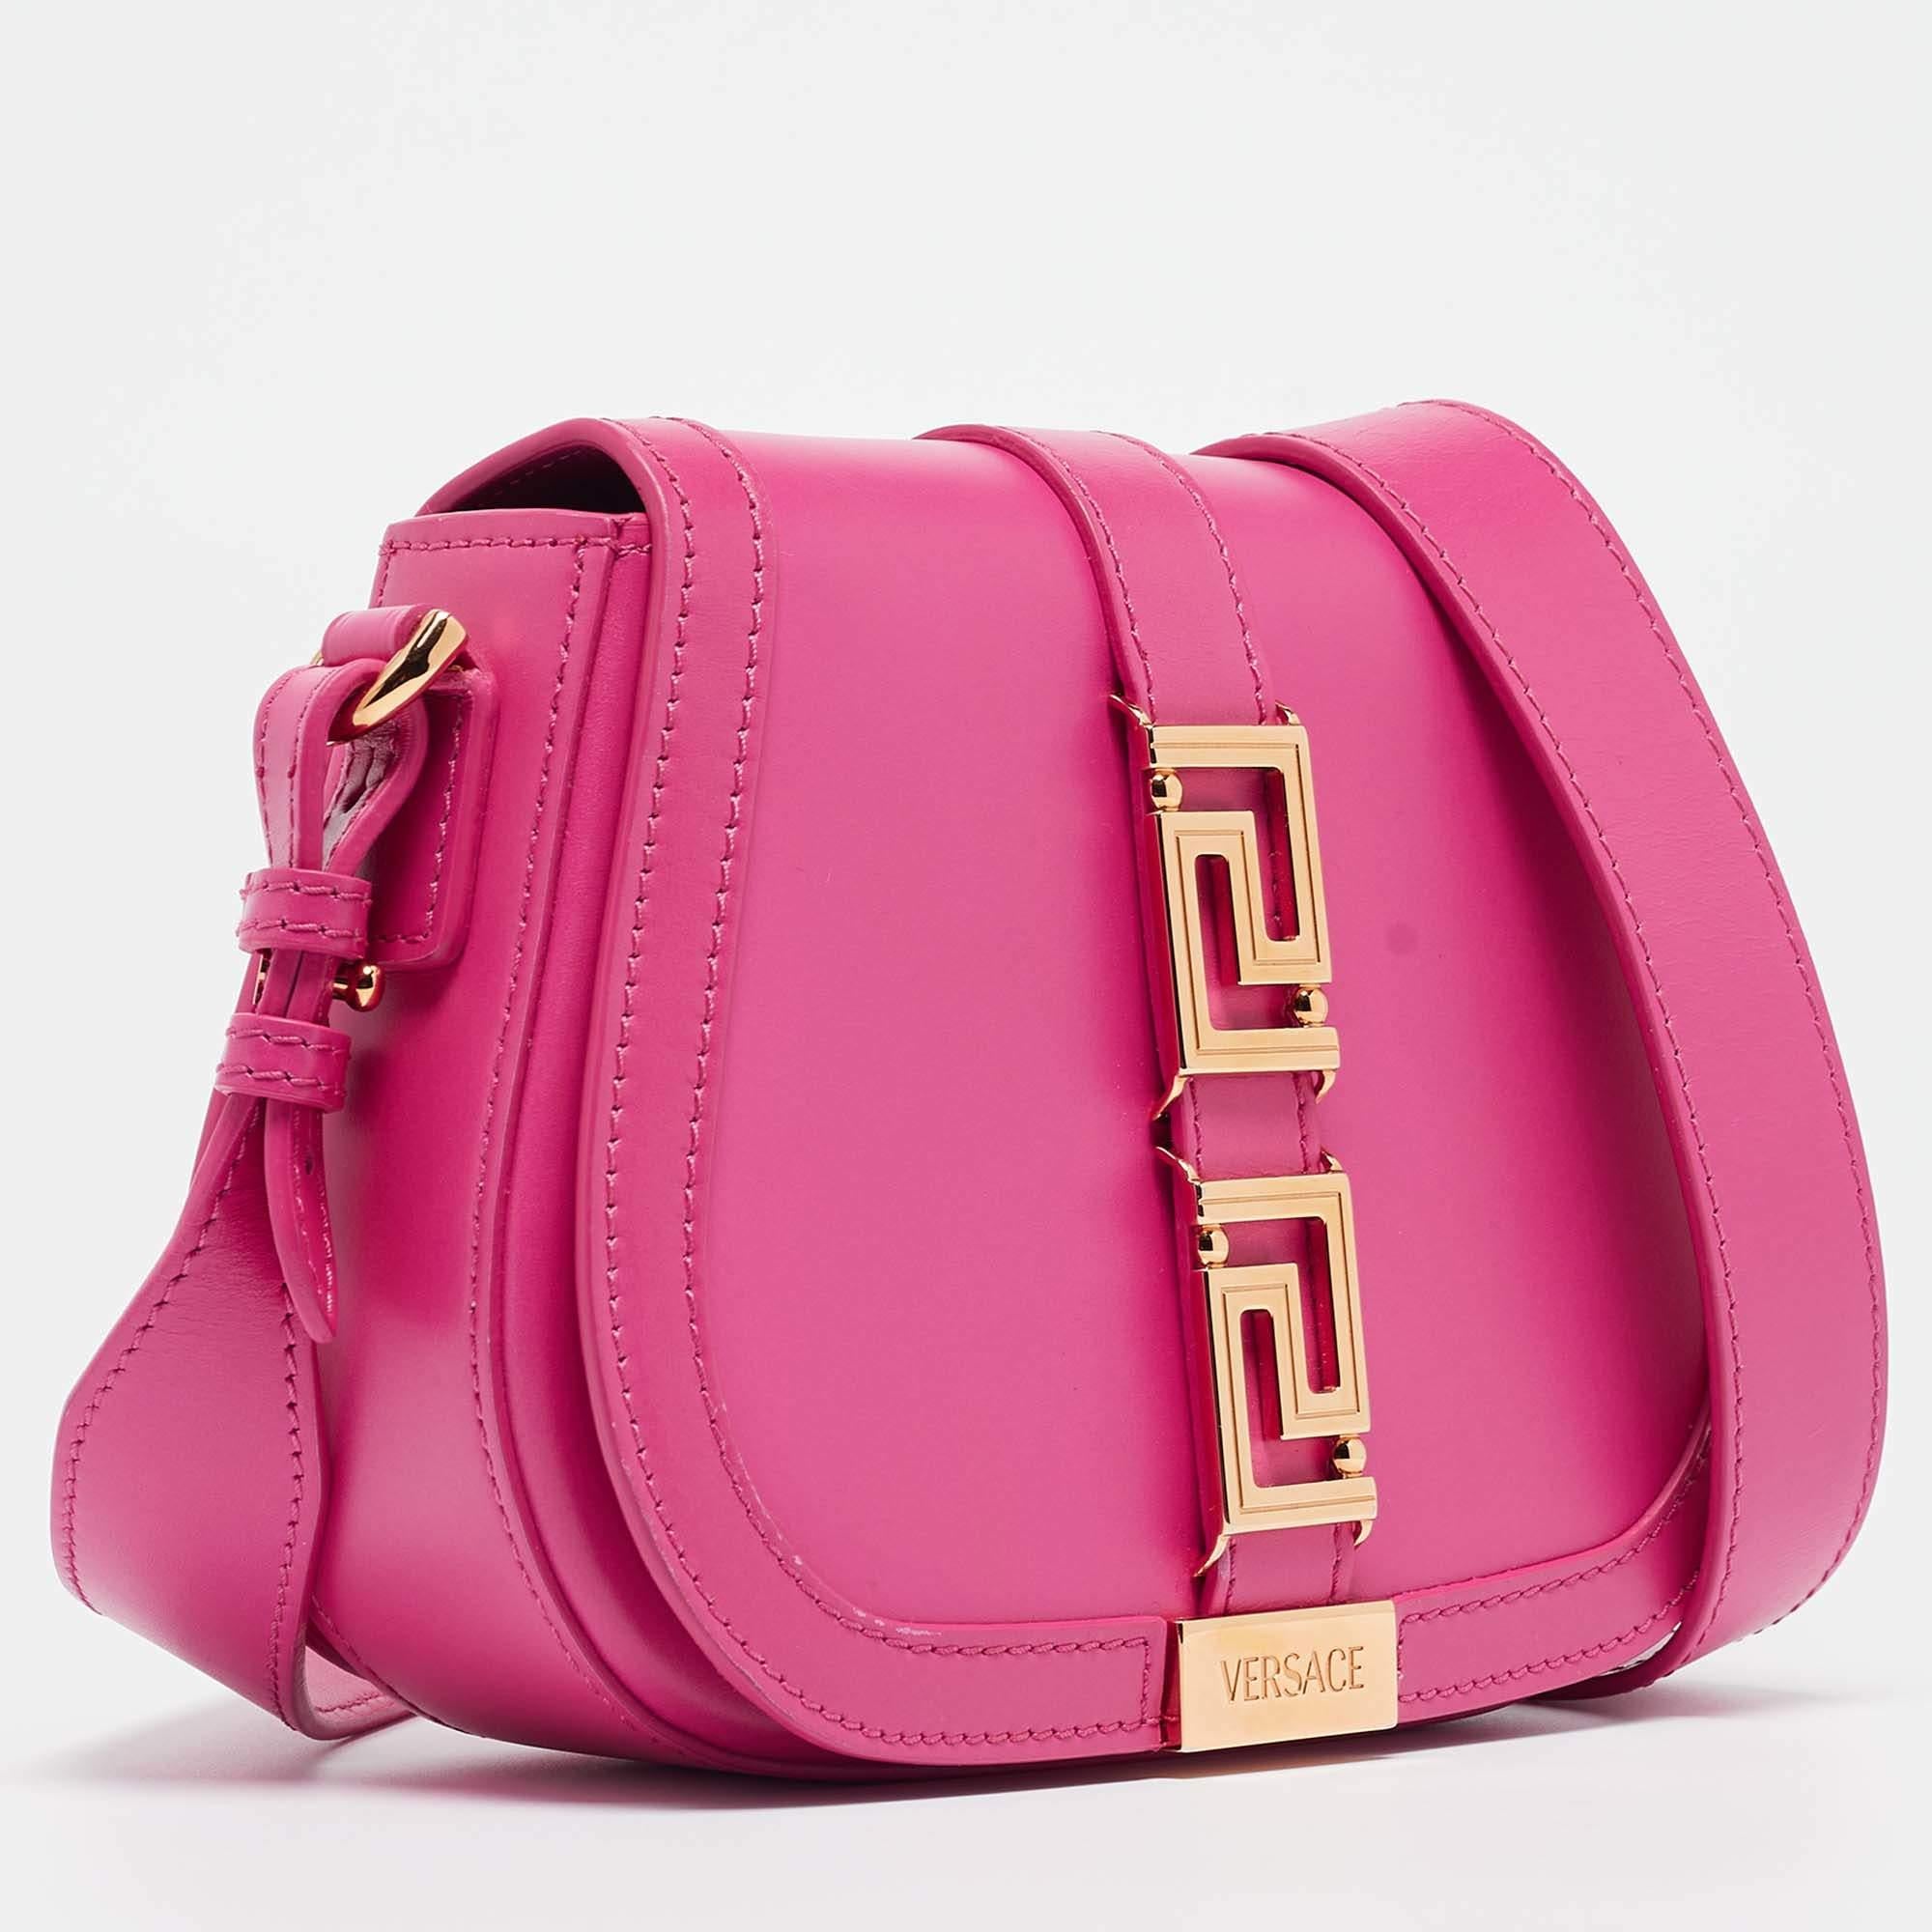 Versace Pink Leather Greca Shoulder Bag For Sale 2